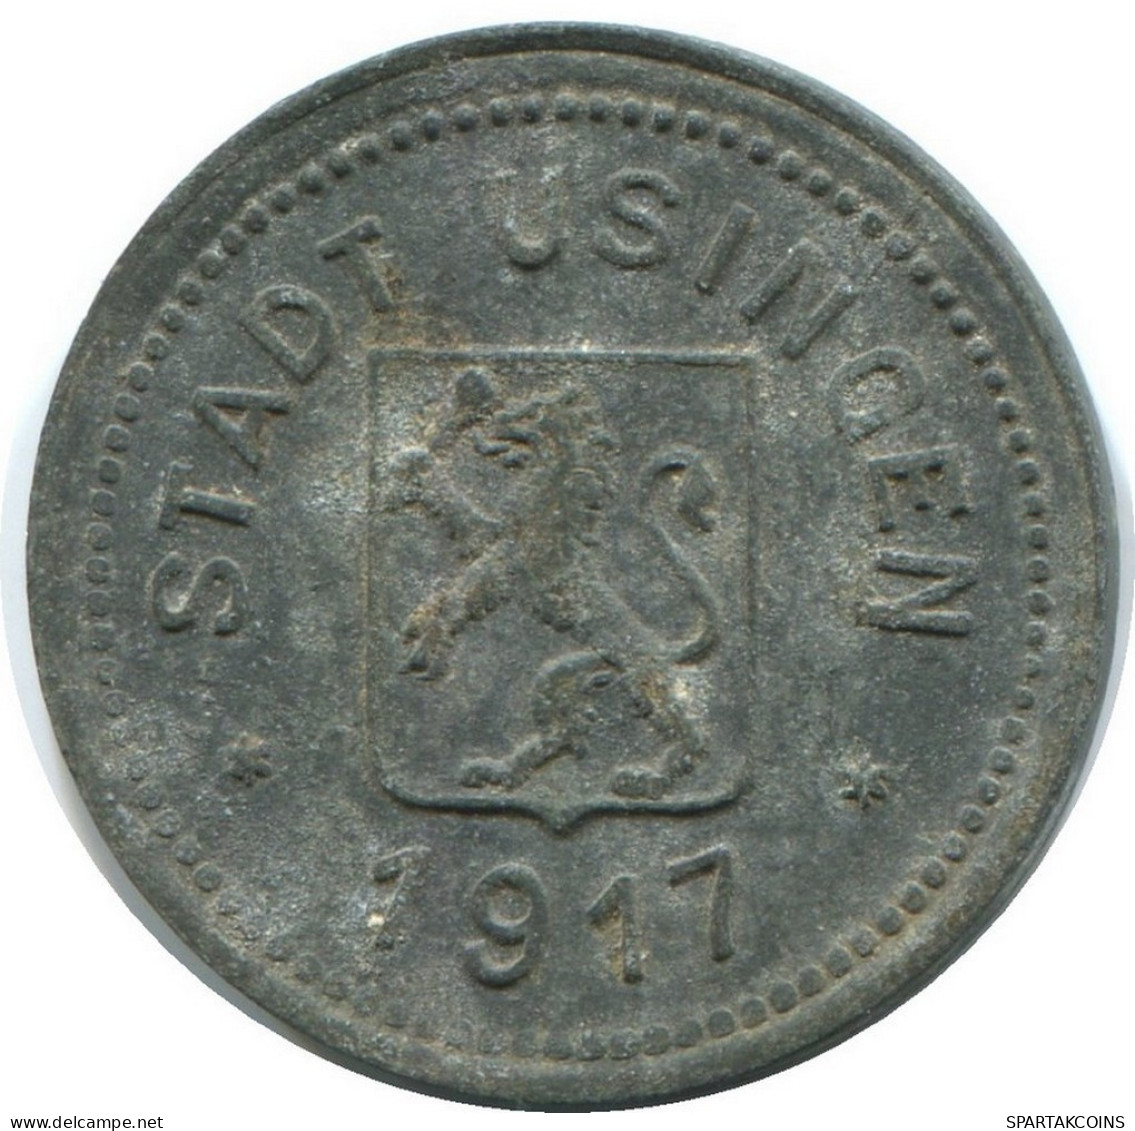 HESSEN 10 PFENNIG 1917 Notgeld German States #DE10484.6.D.A - 10 Pfennig